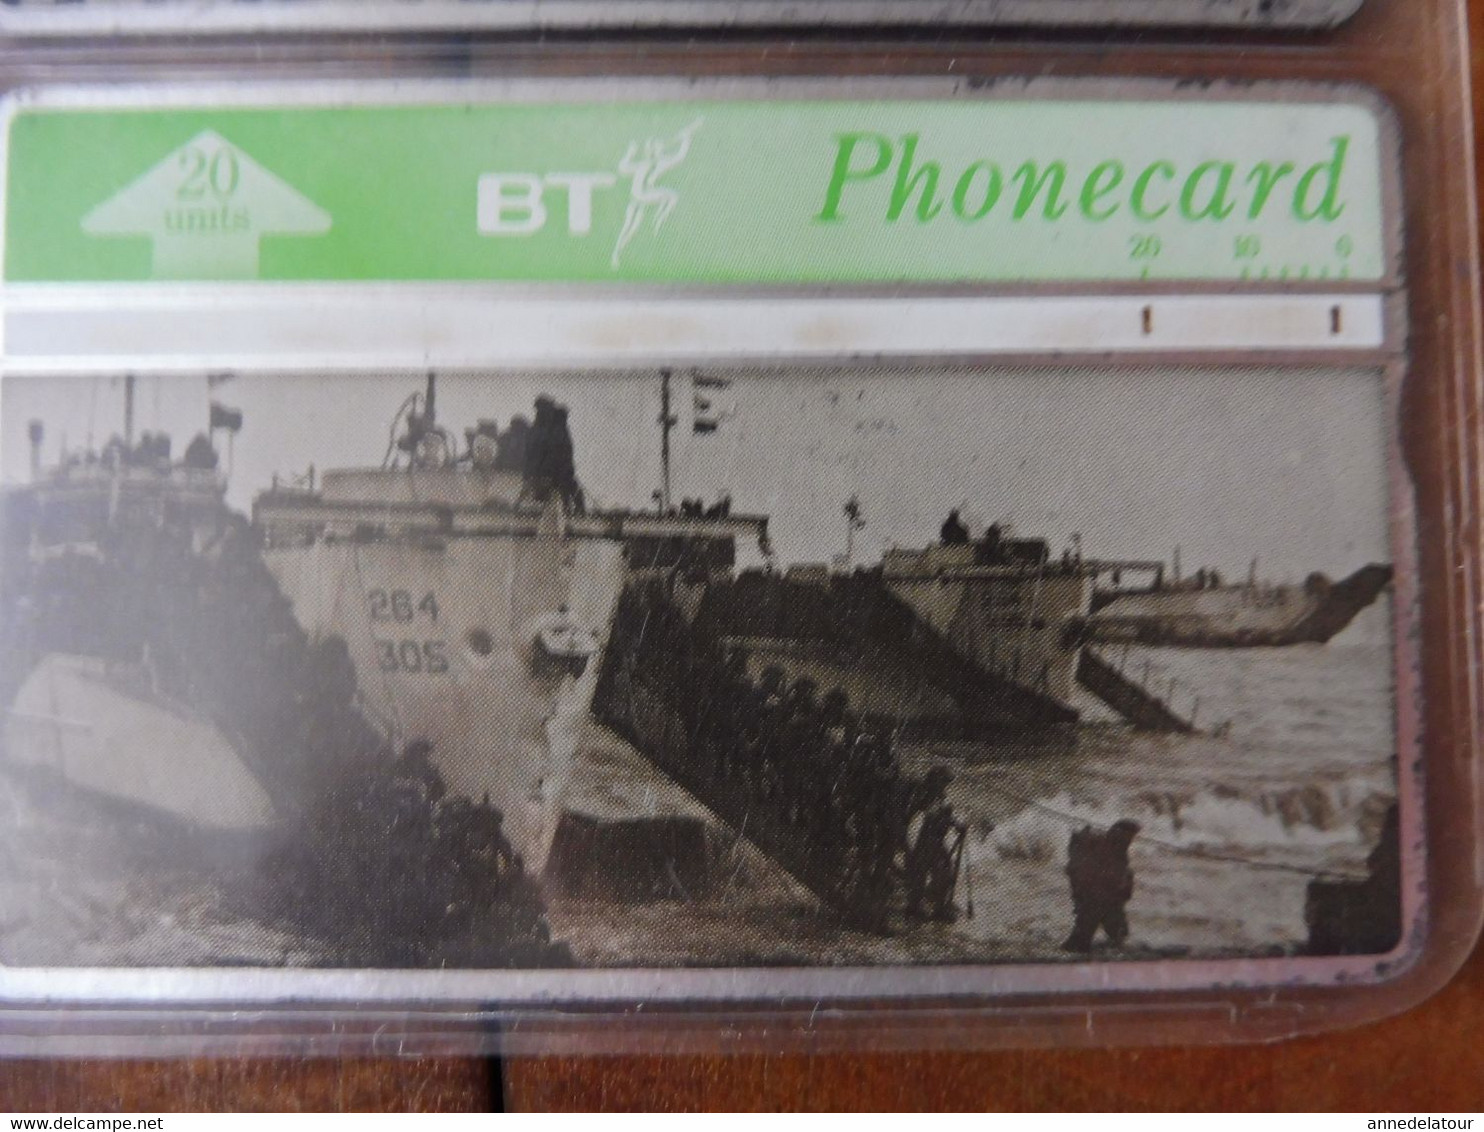 10 télécartes (cartes téléphoniques) BT PHONECARD dont 4 unités  D-Day Follow-up waves landing on Gold Beach from an LCI